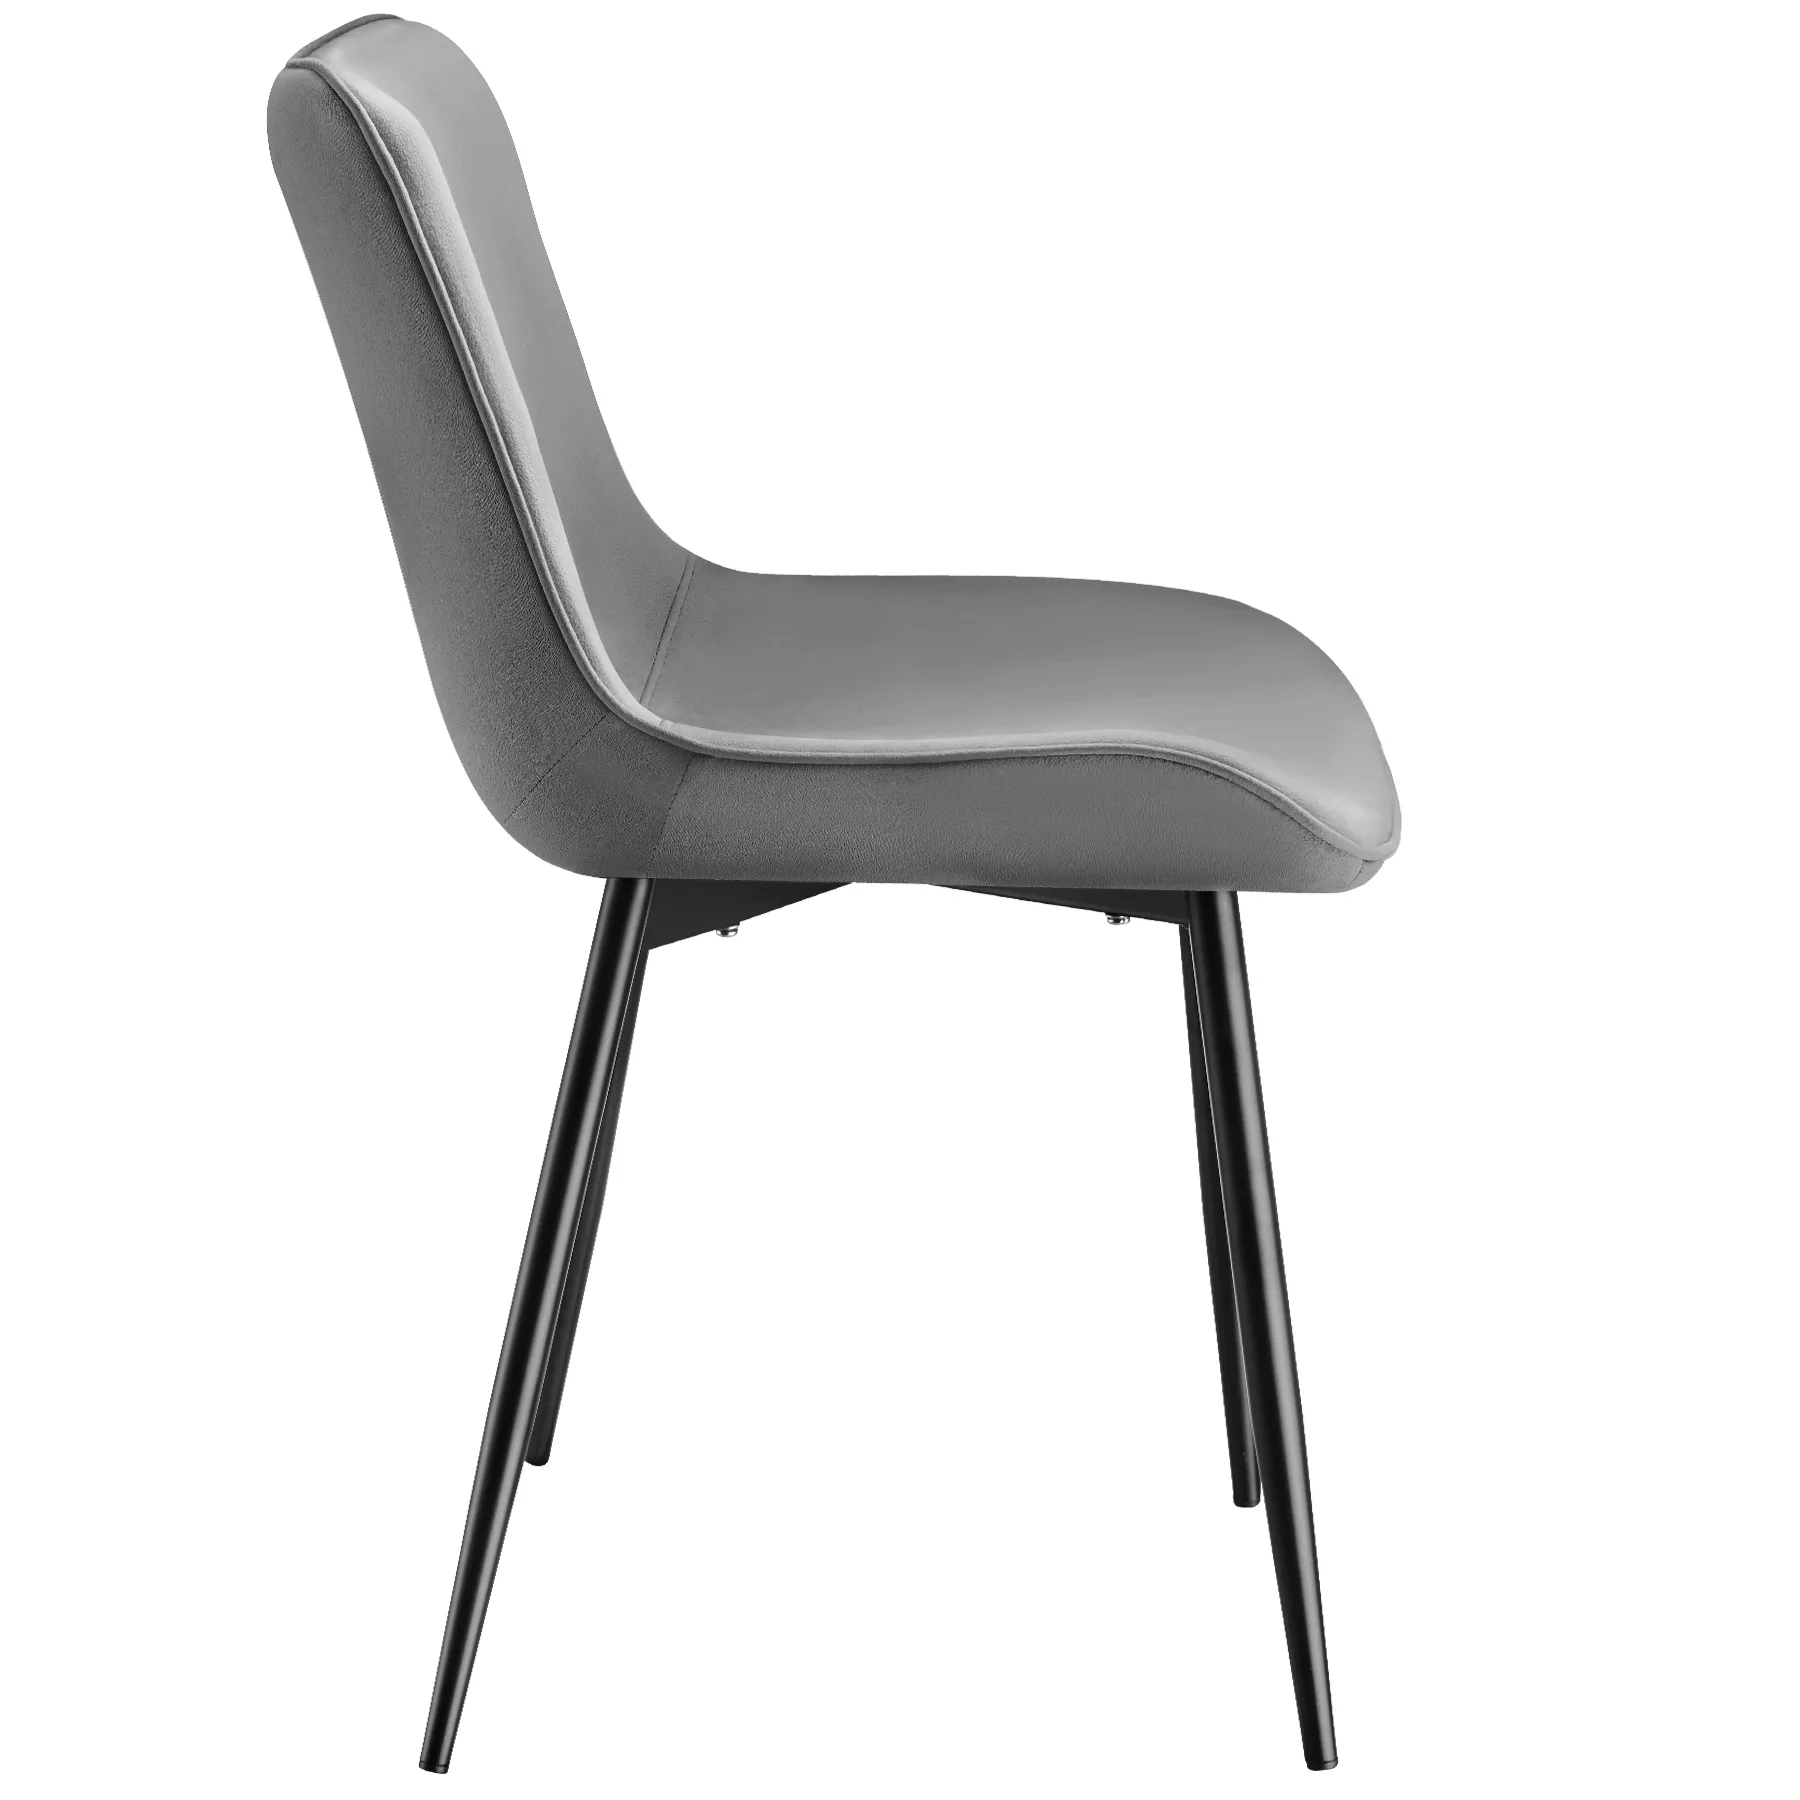 8er Set Stuhl Monroe Samtoptik - grau günstig online kaufen